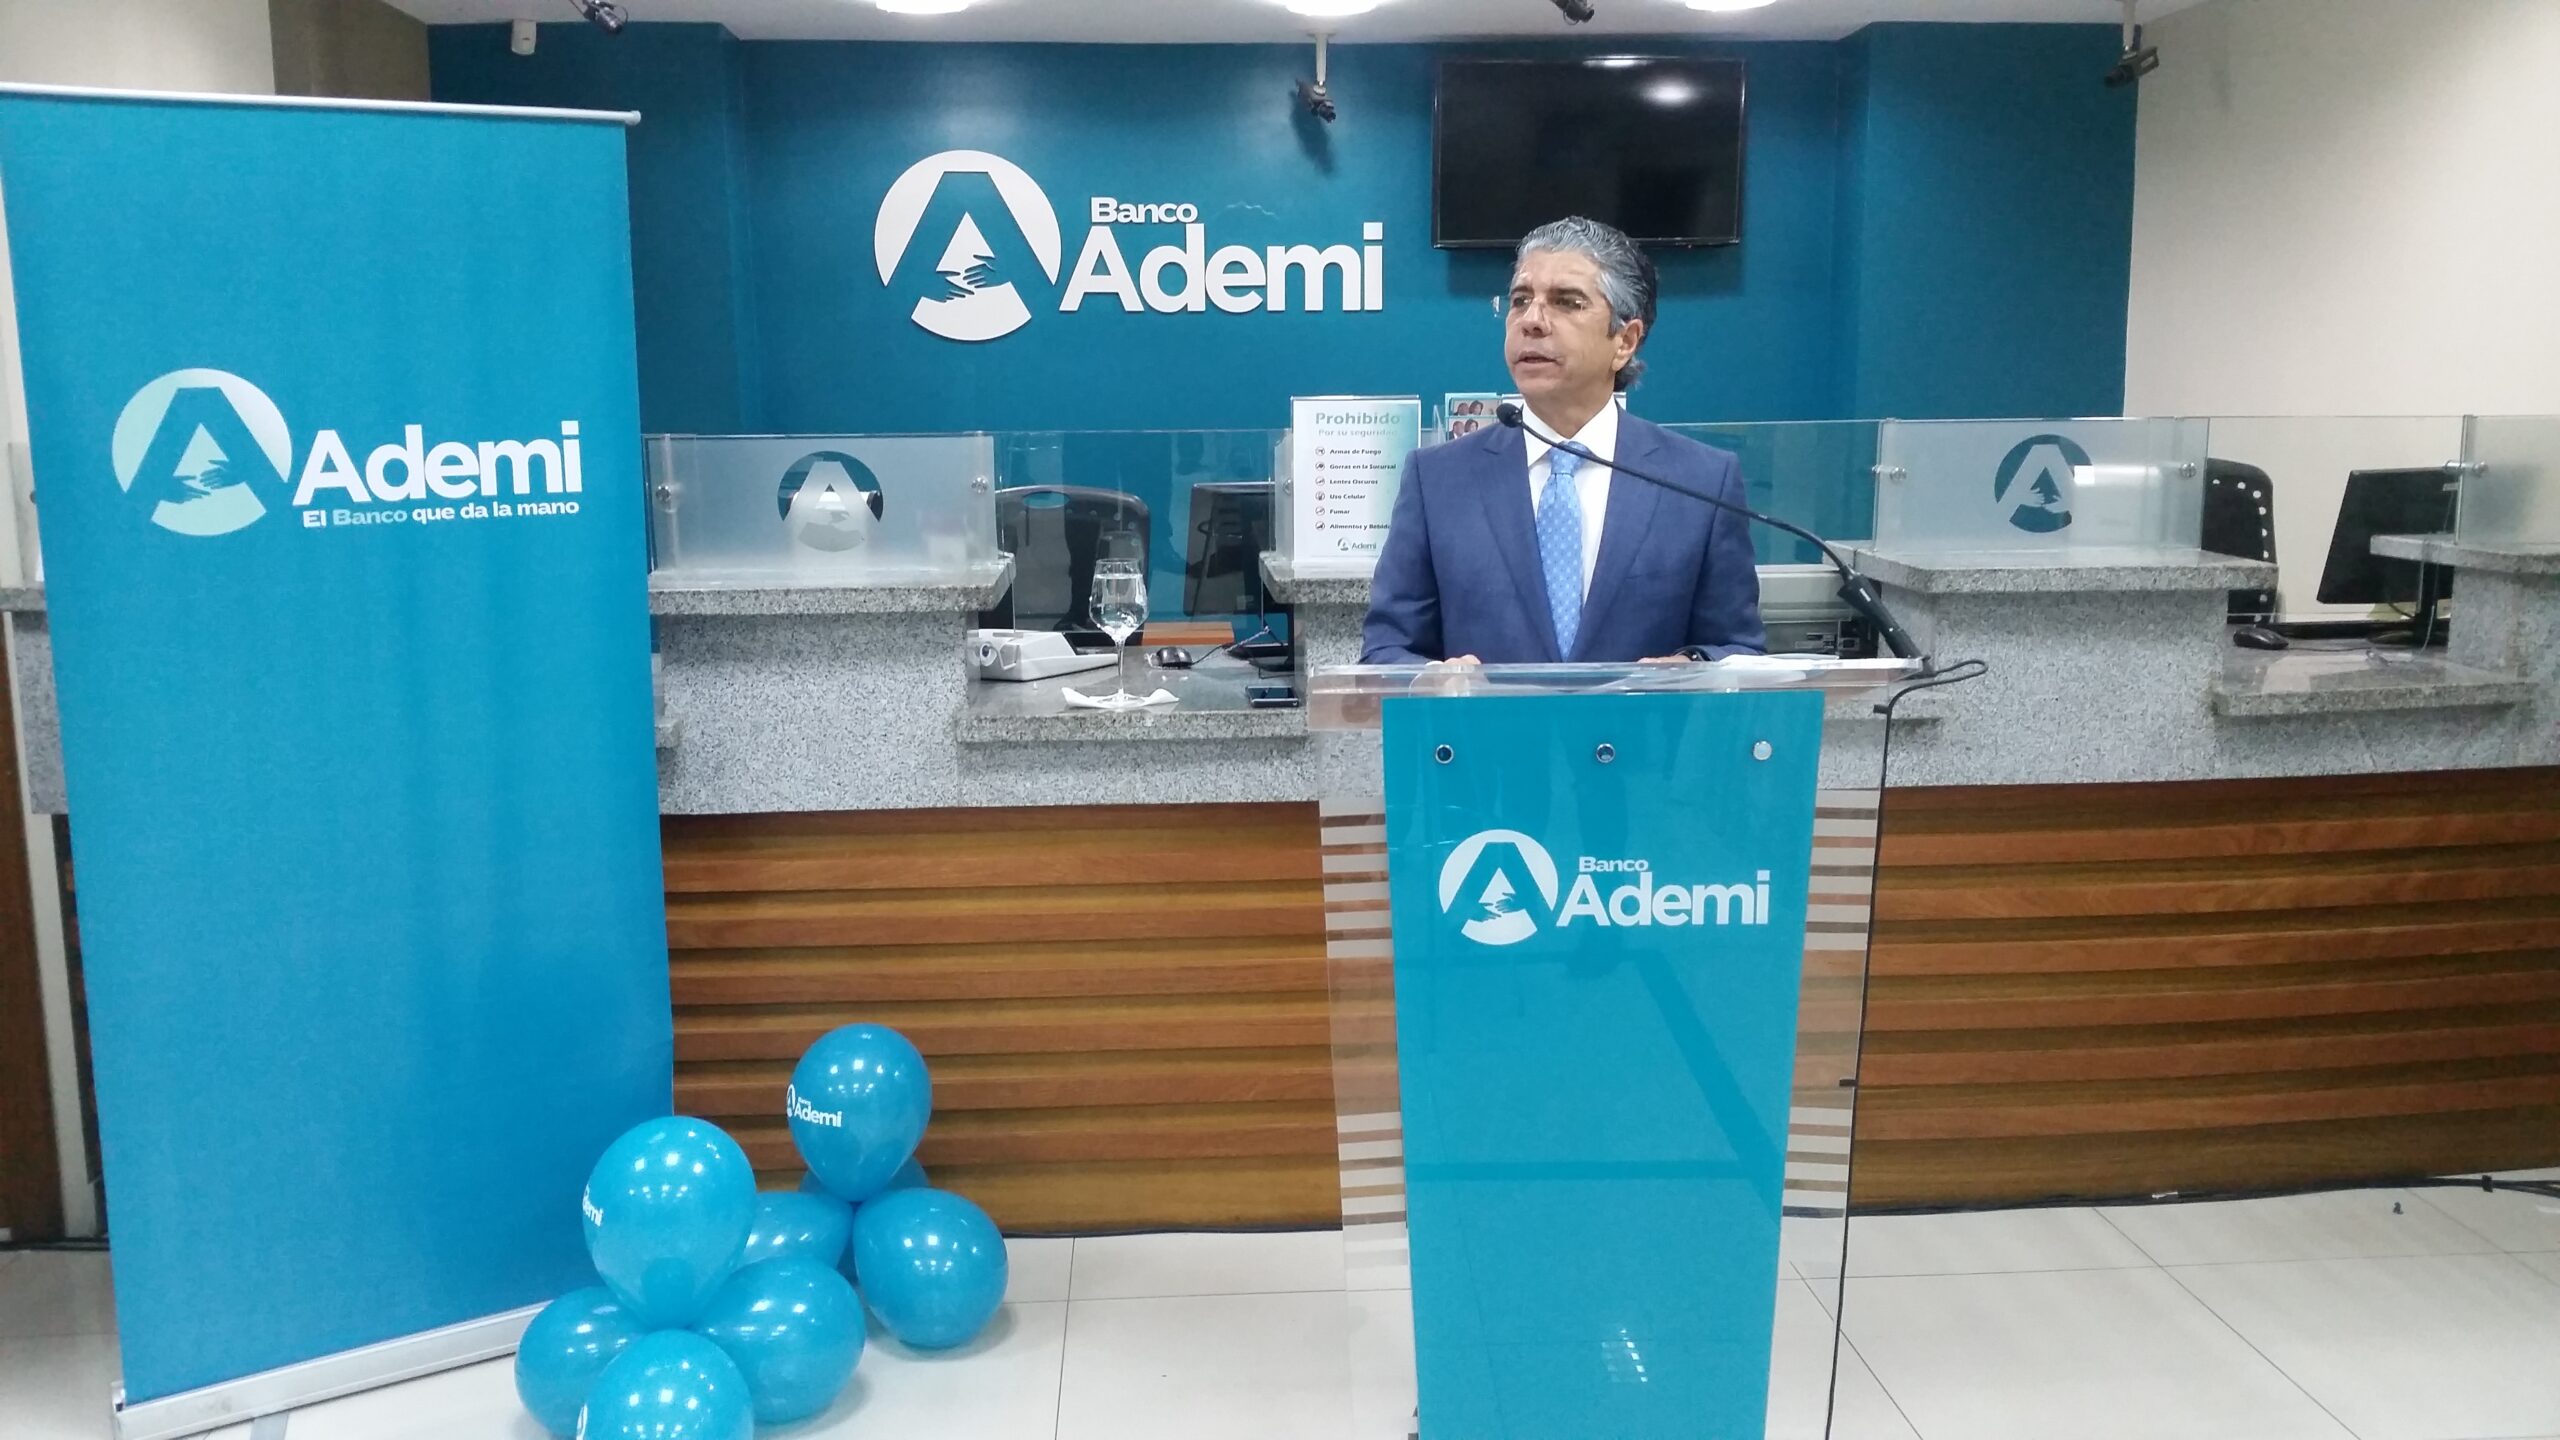 Banco Ademi supera expectativas